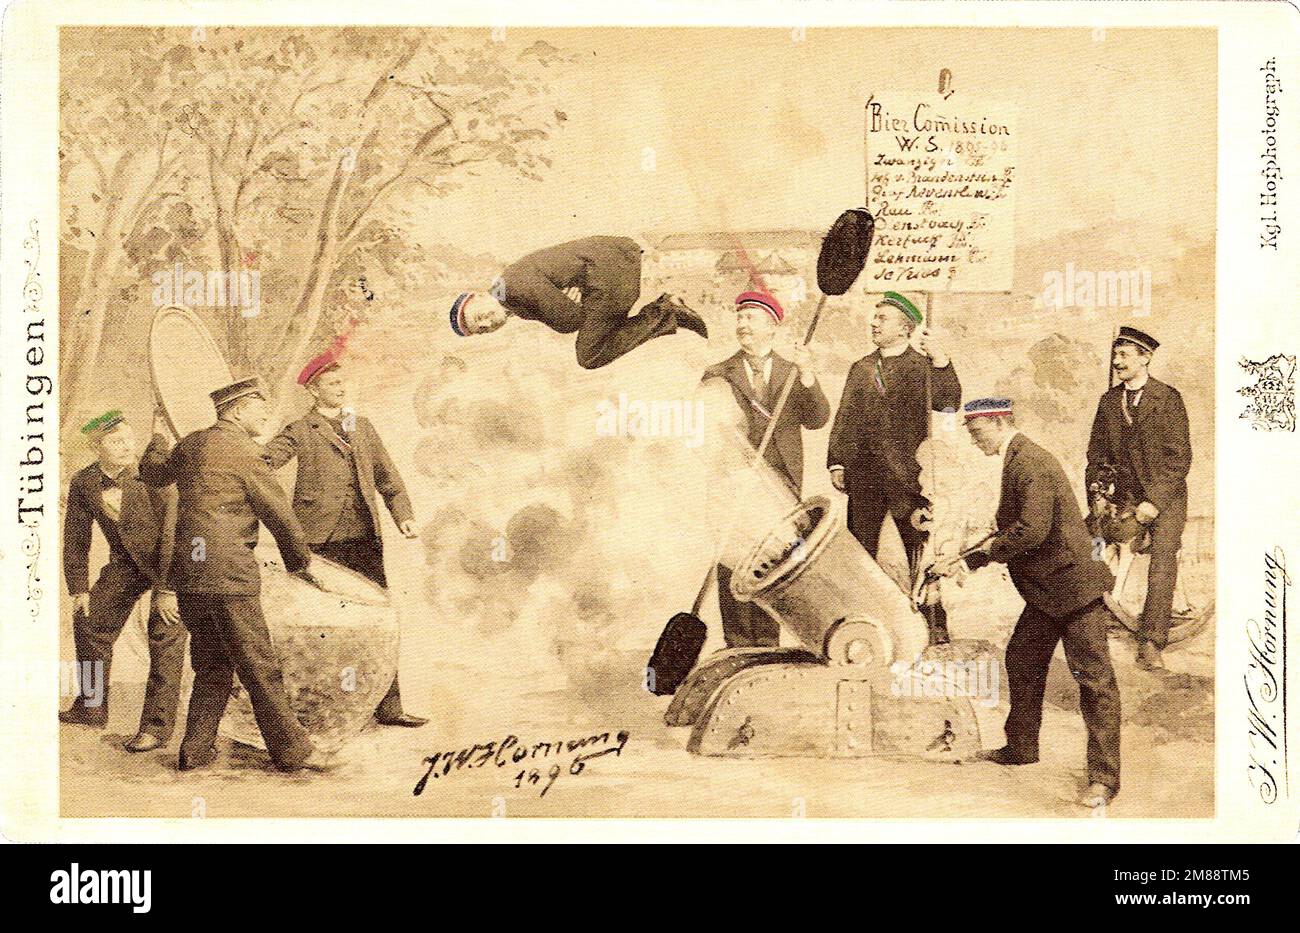 Julius Wilhelm Hornung - photographe allemand connu pour ses portraits, ses montages de blagues et ses cartes postales - Cannon Flight - session d'hiver de la commission de la bière. Banque D'Images